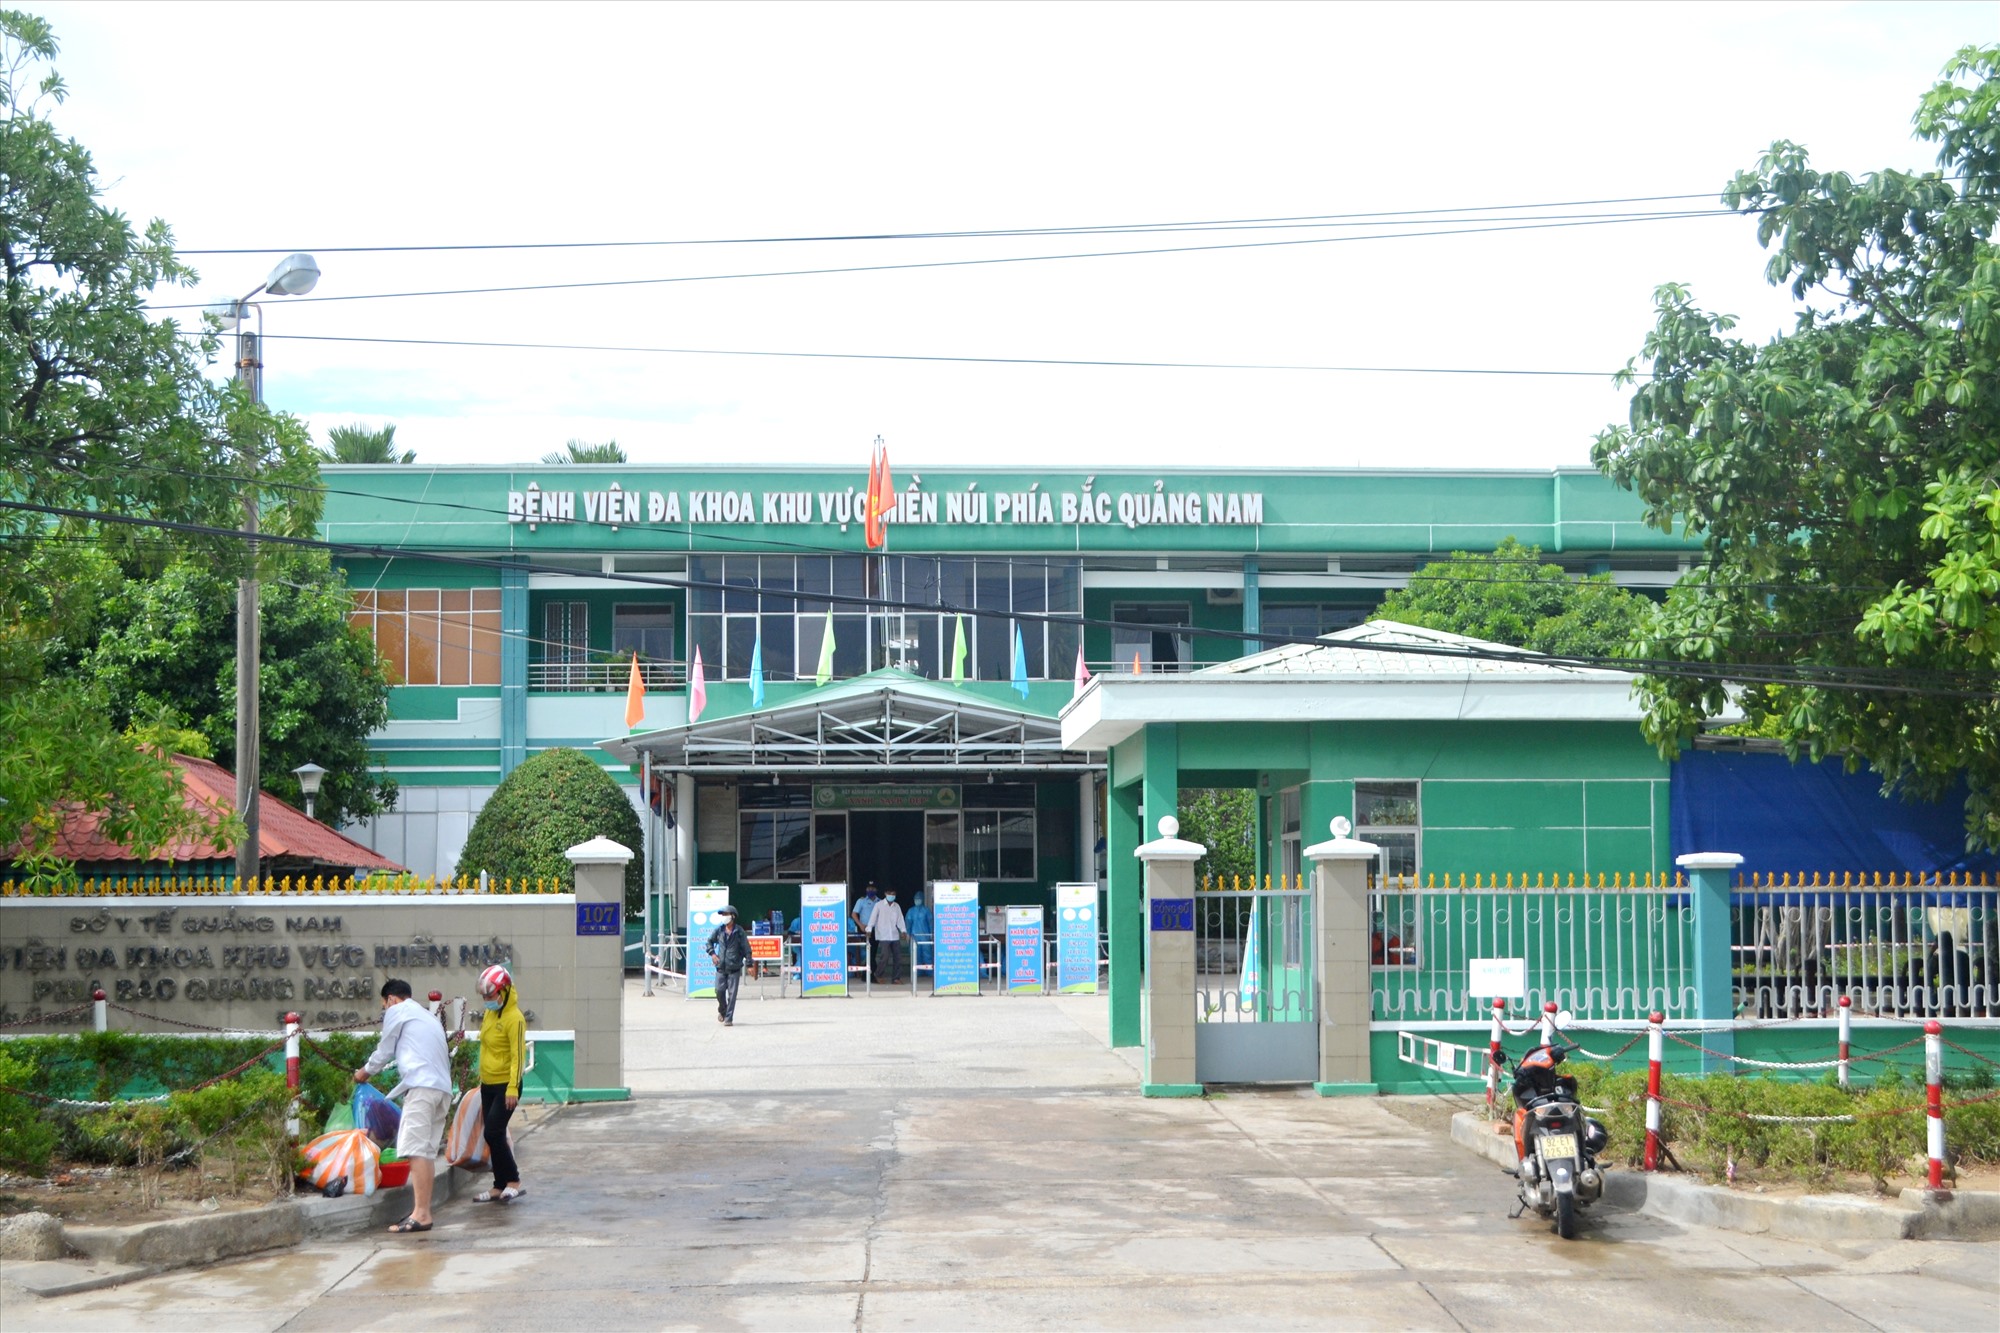 Bị tố tắc trách, Bệnh viện miền núi phía Bắc Quảng Nam lên tiếng - Ảnh 1.